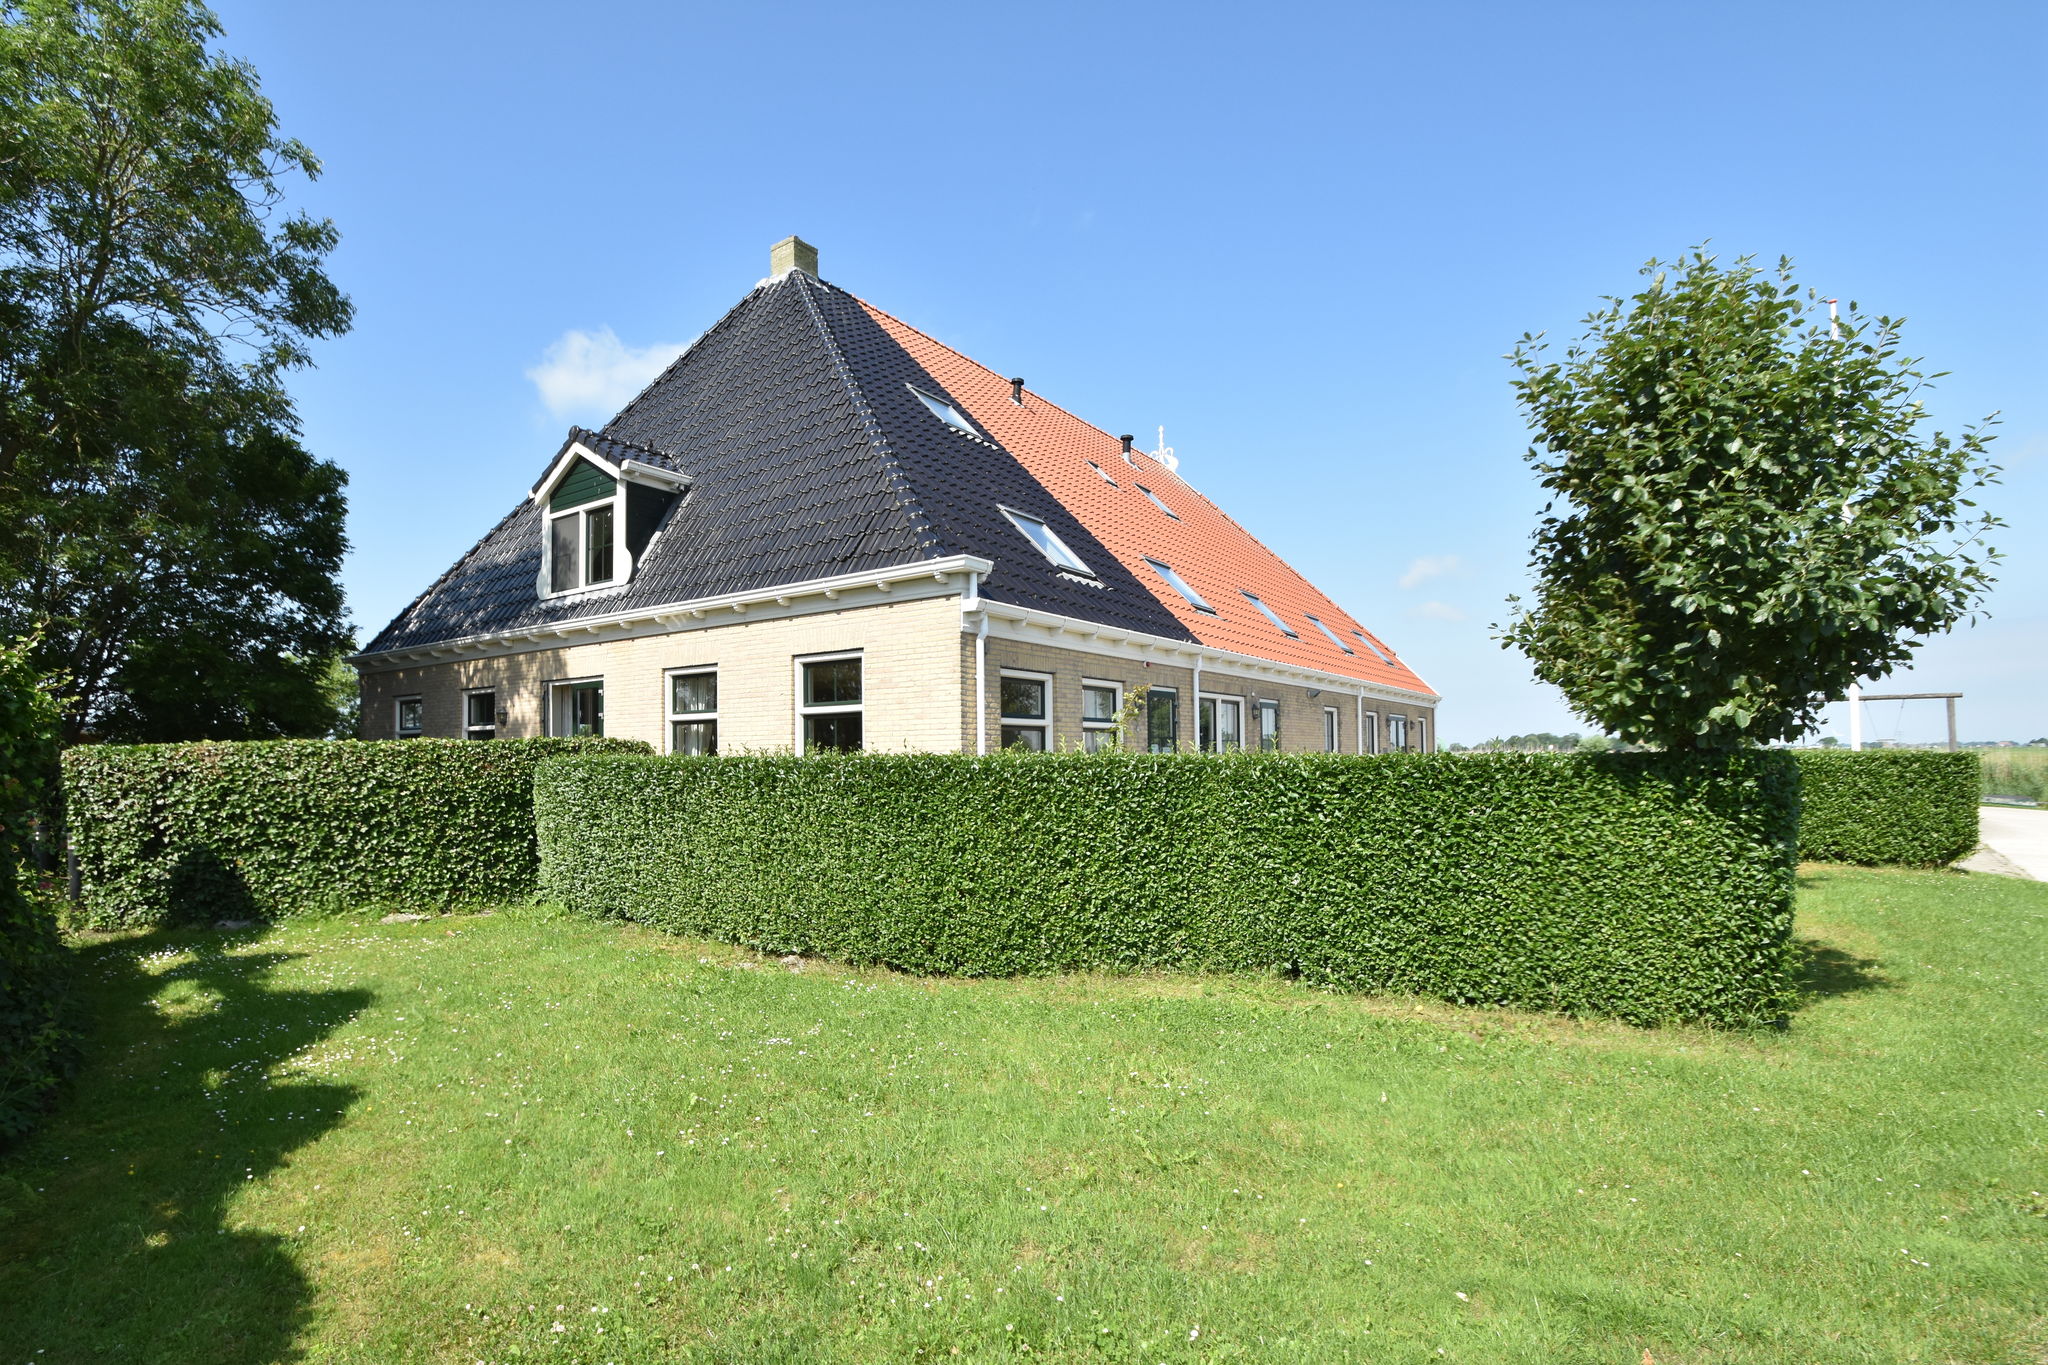 Schönes Landhaus mit Steg in Lollum nahe holländischer Küste